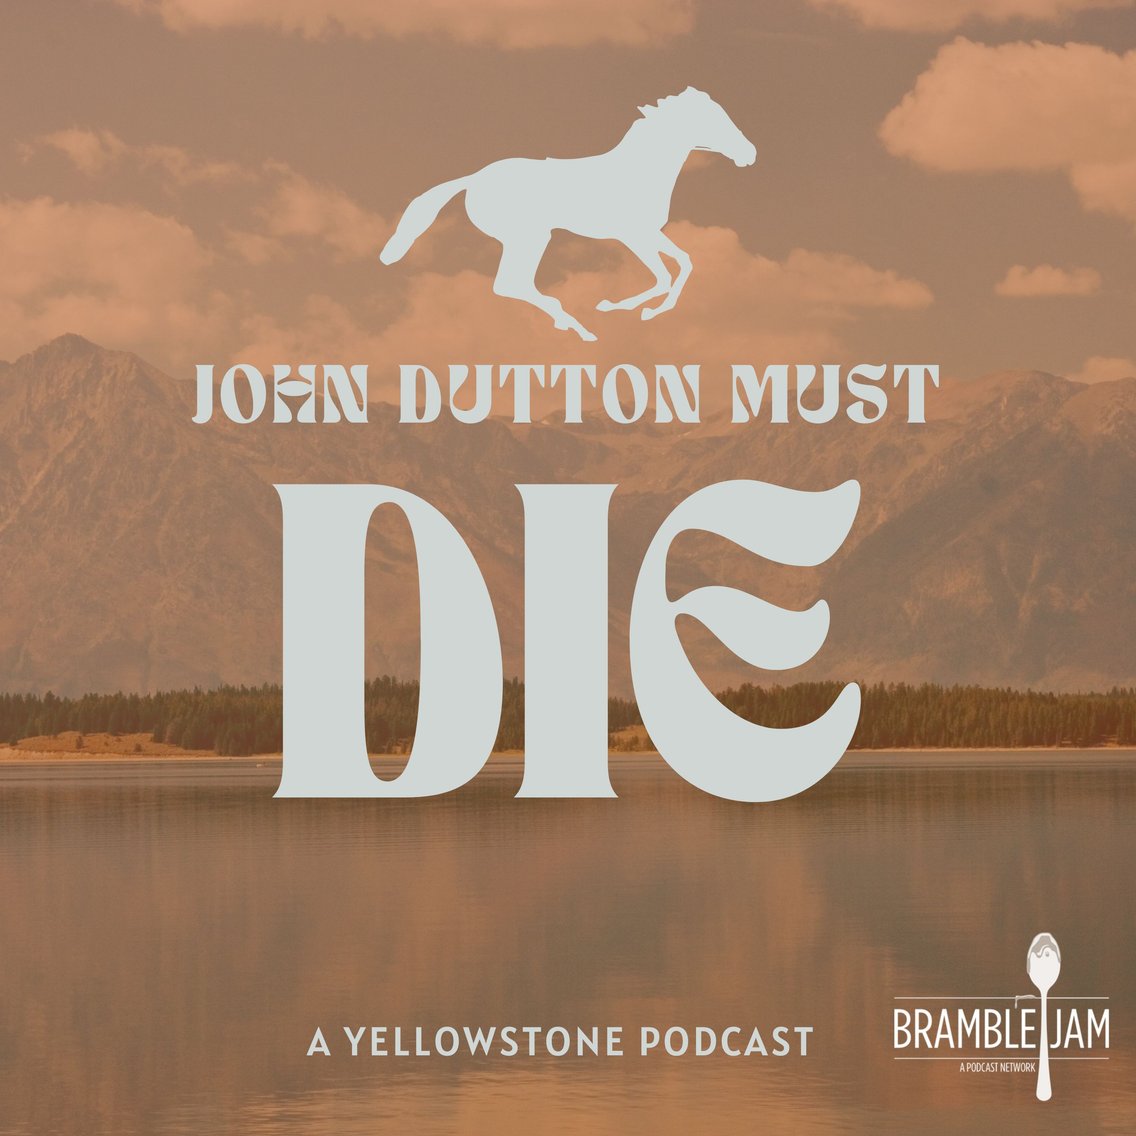 John Dutton Must Die: A Yellowstone Podcast - immagine di copertina
